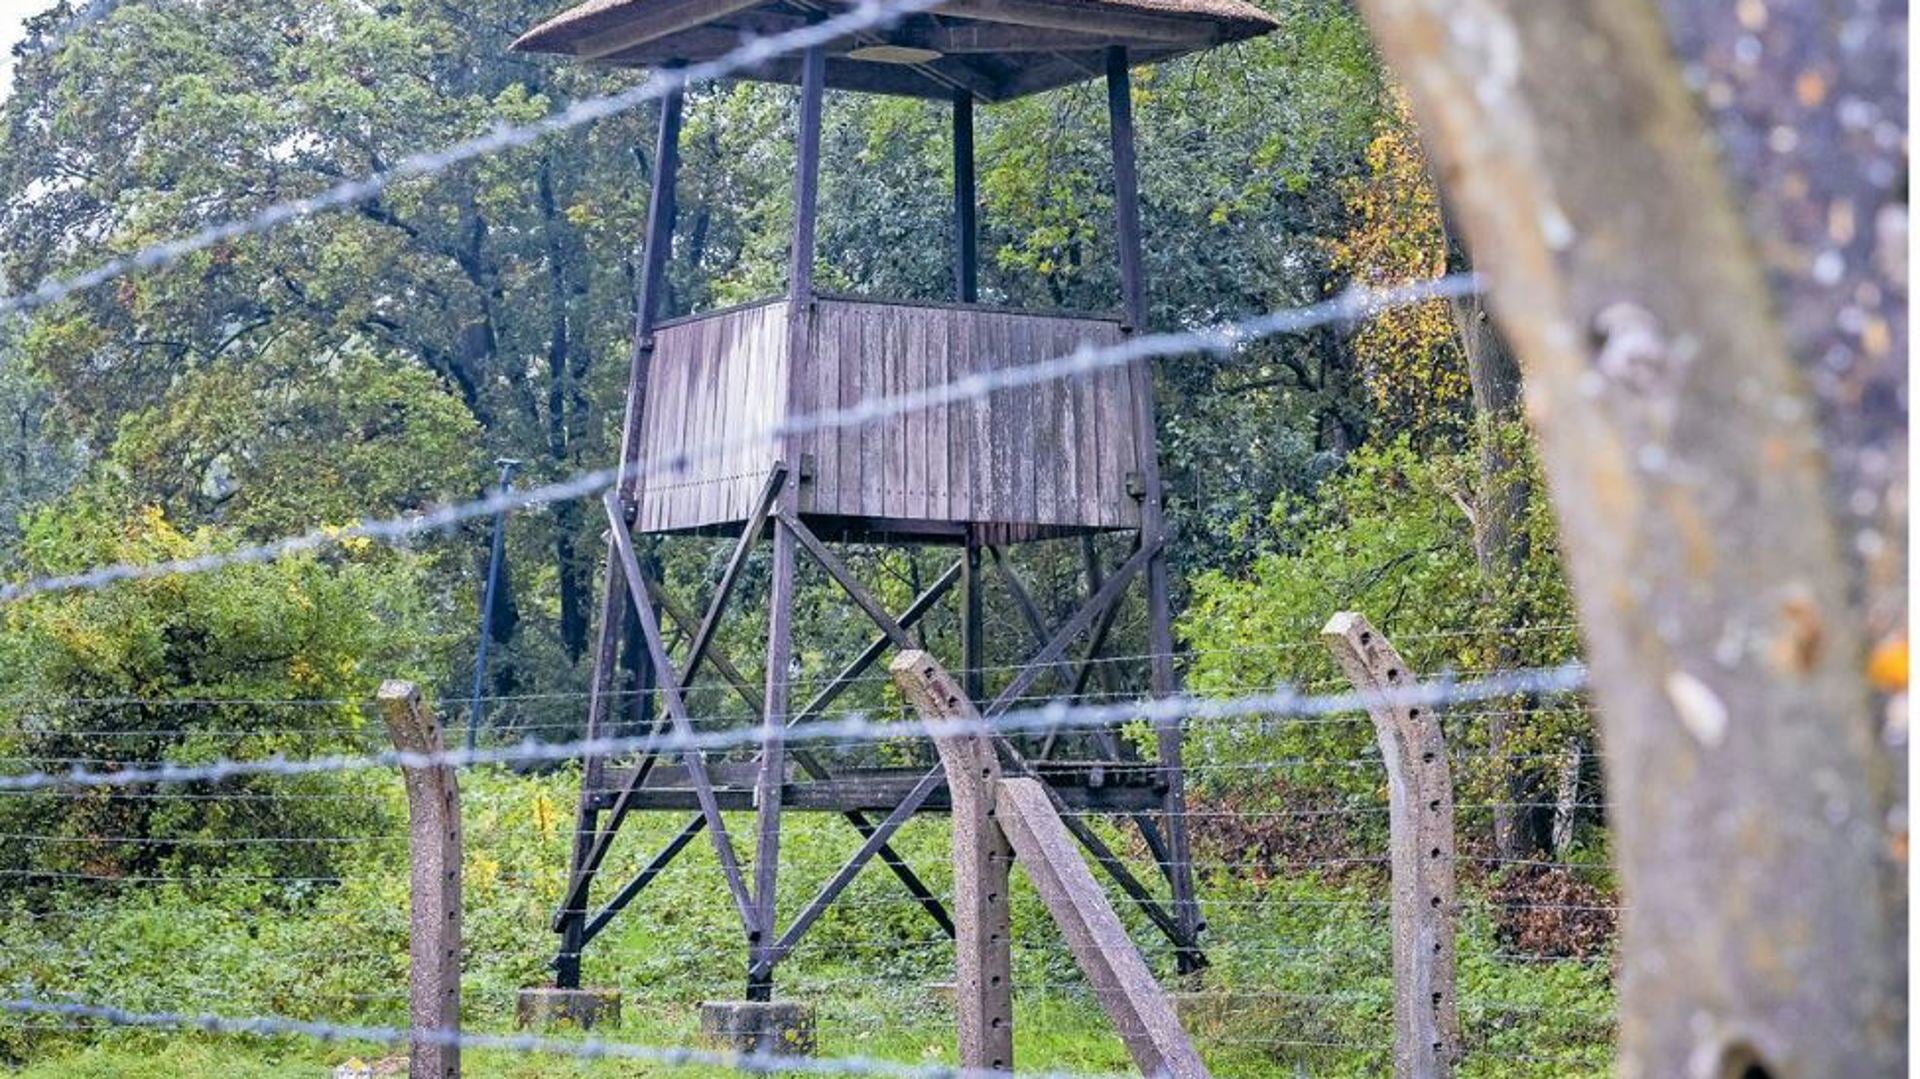 Wachttoren in voormalig kamp Vught symboliseert de herinnering aan de oorlog, die generaties lang kan doorwerken.